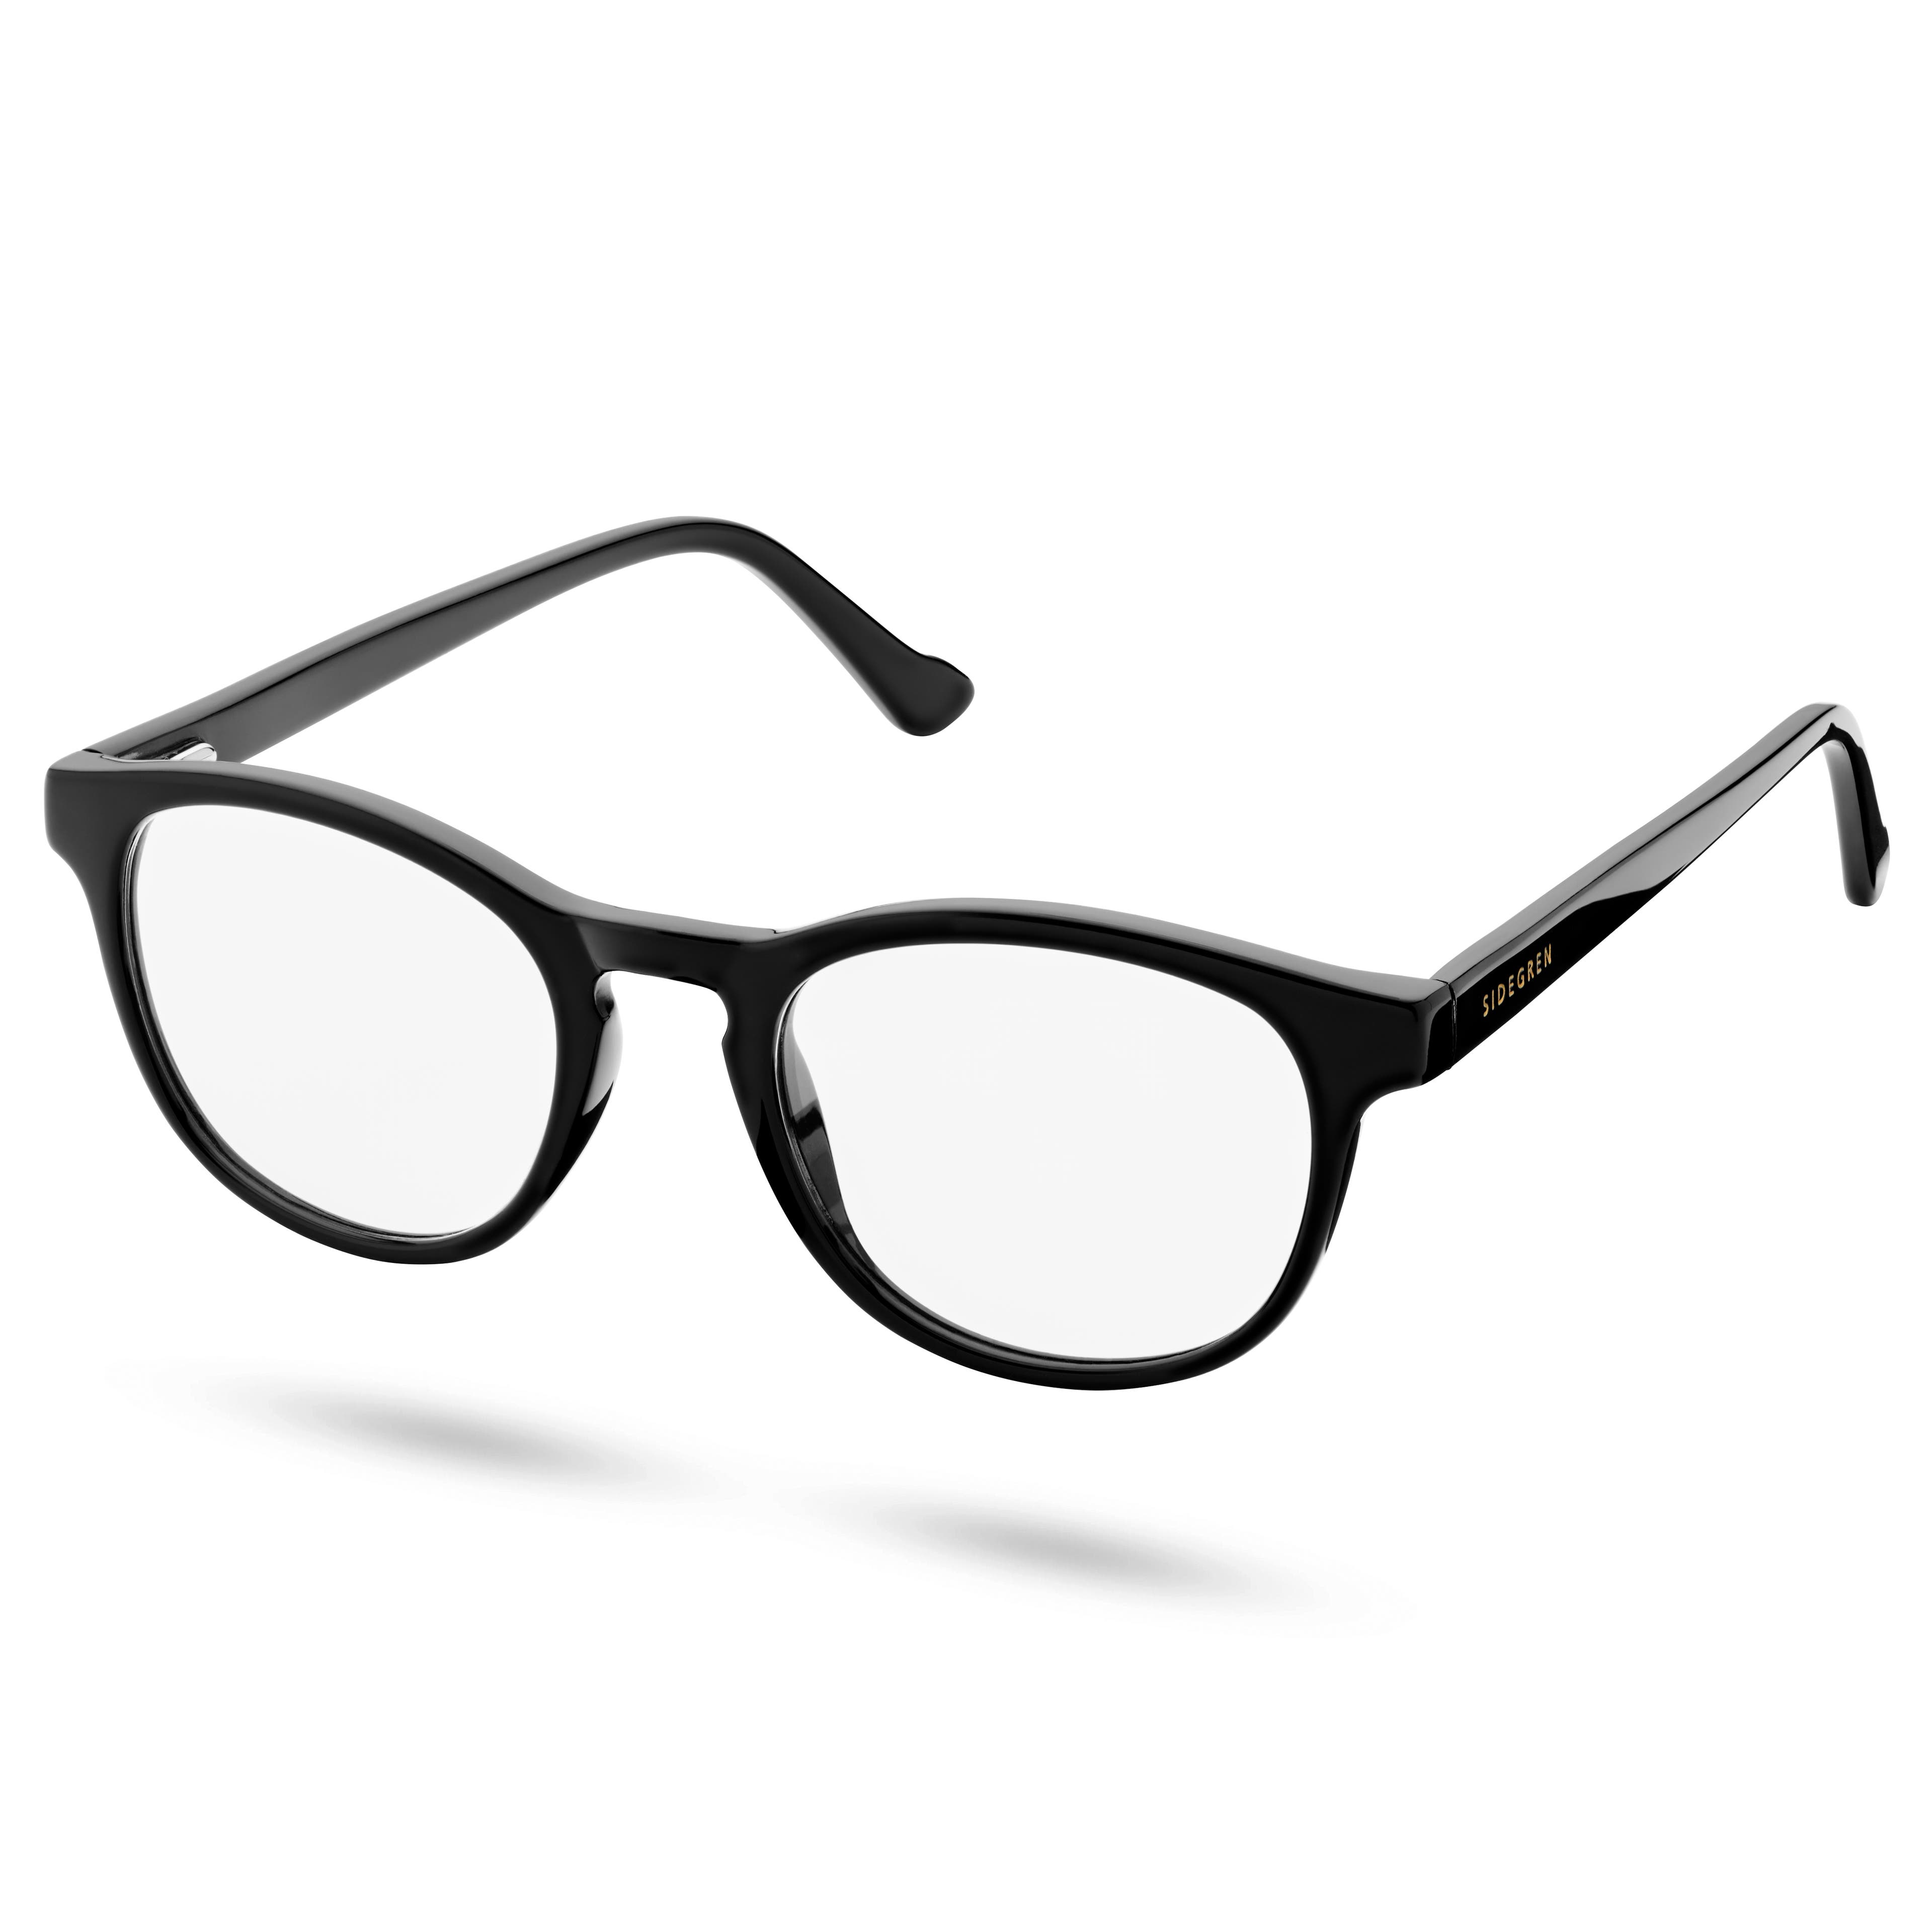 Klasické čierne okuliare s čírymi šošovkami blokujúce modré svetlo